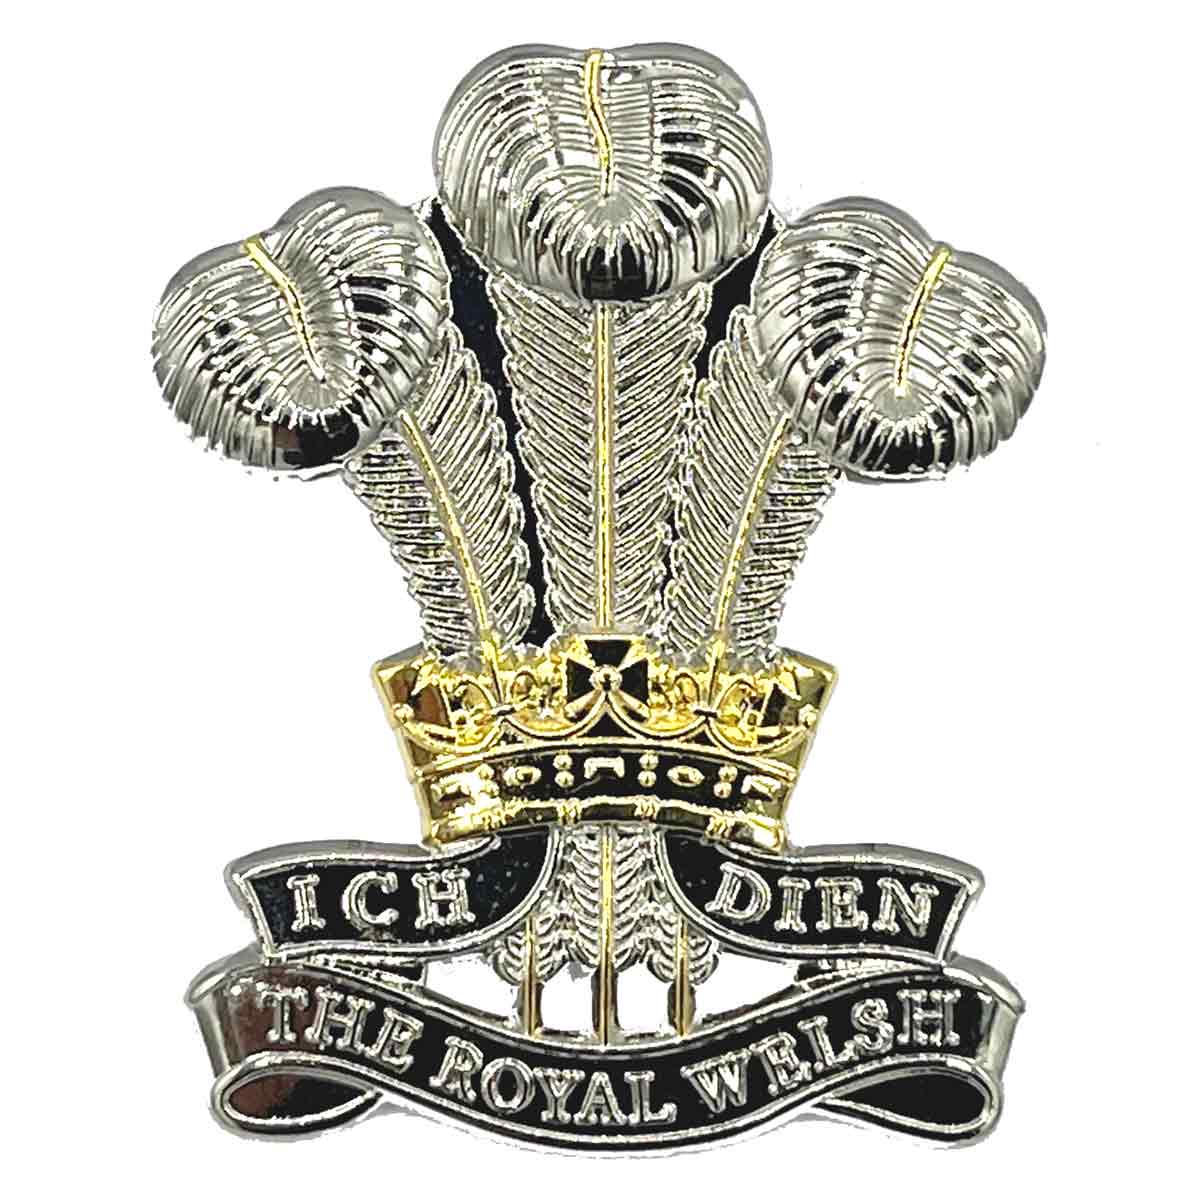 Royal Welsh Beret Cap Badge - John Bull Clothing